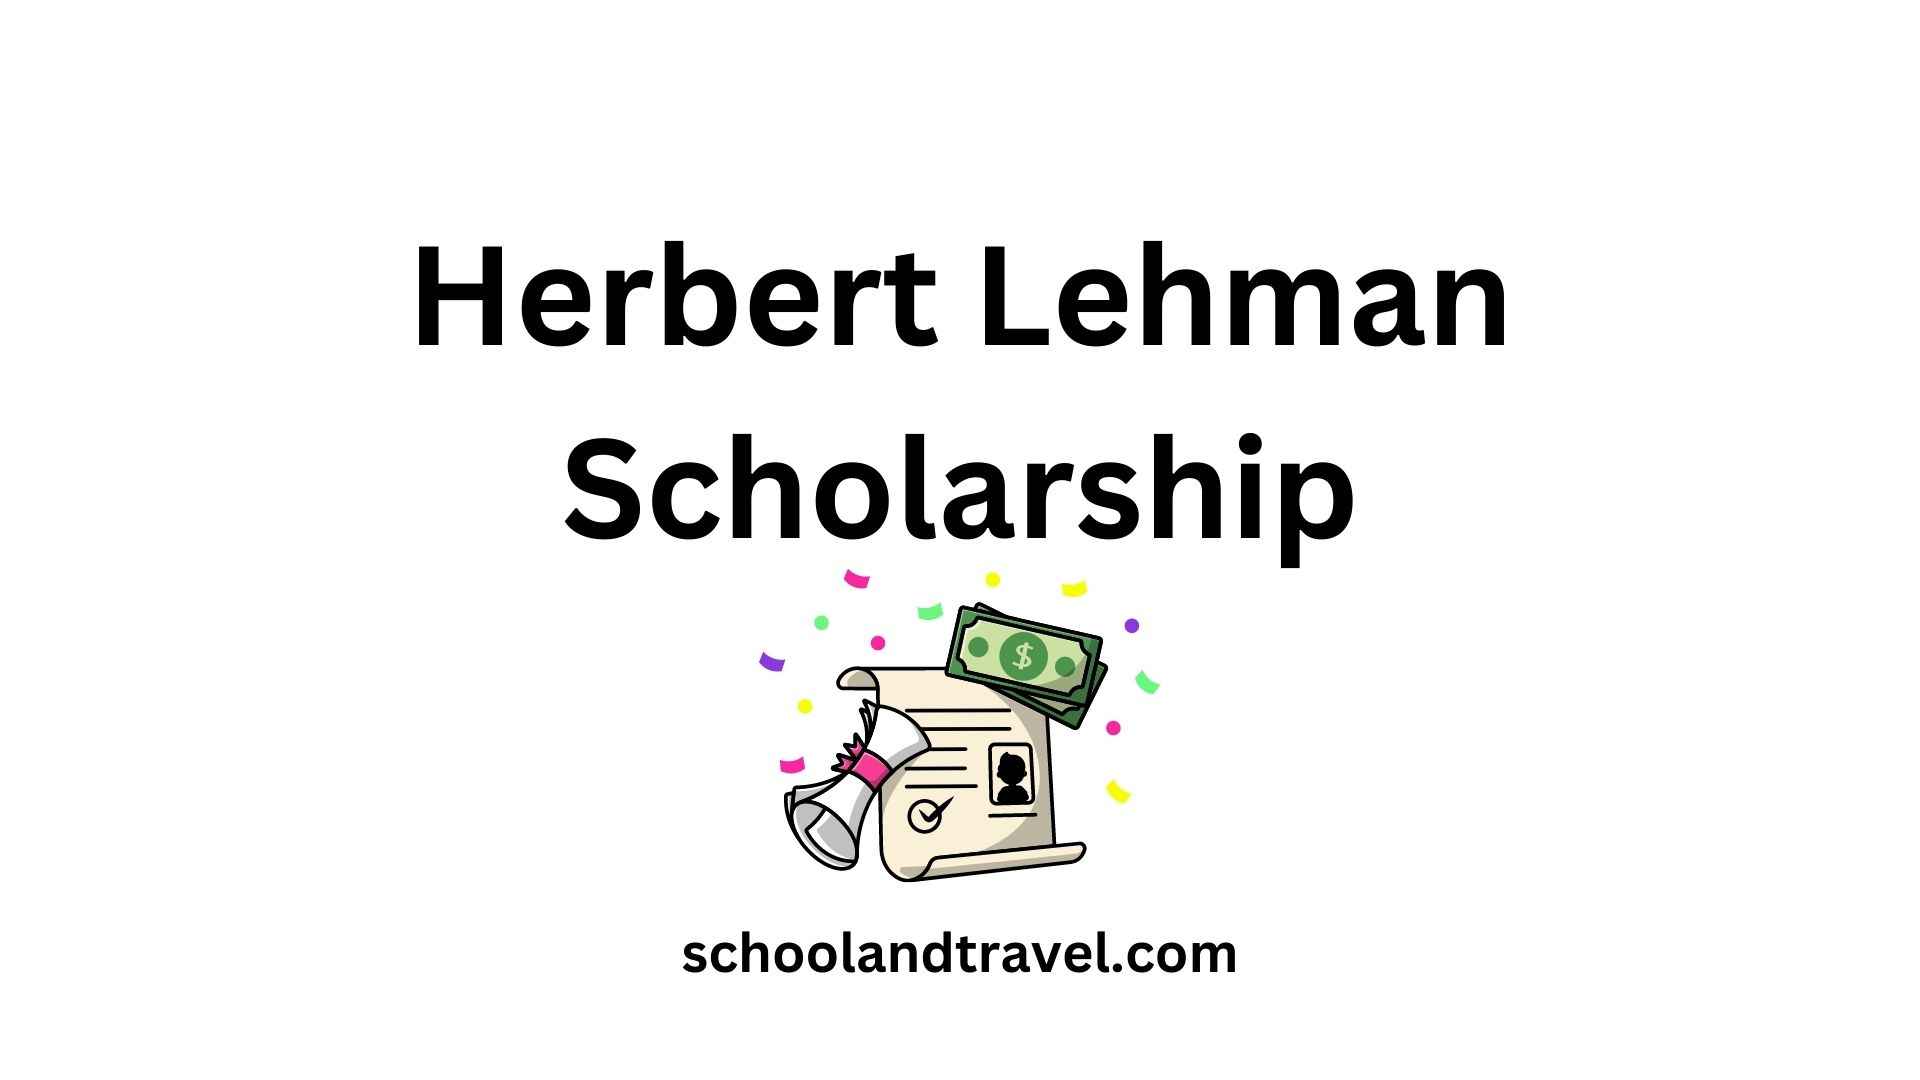 Herbert Lehman Scholarship